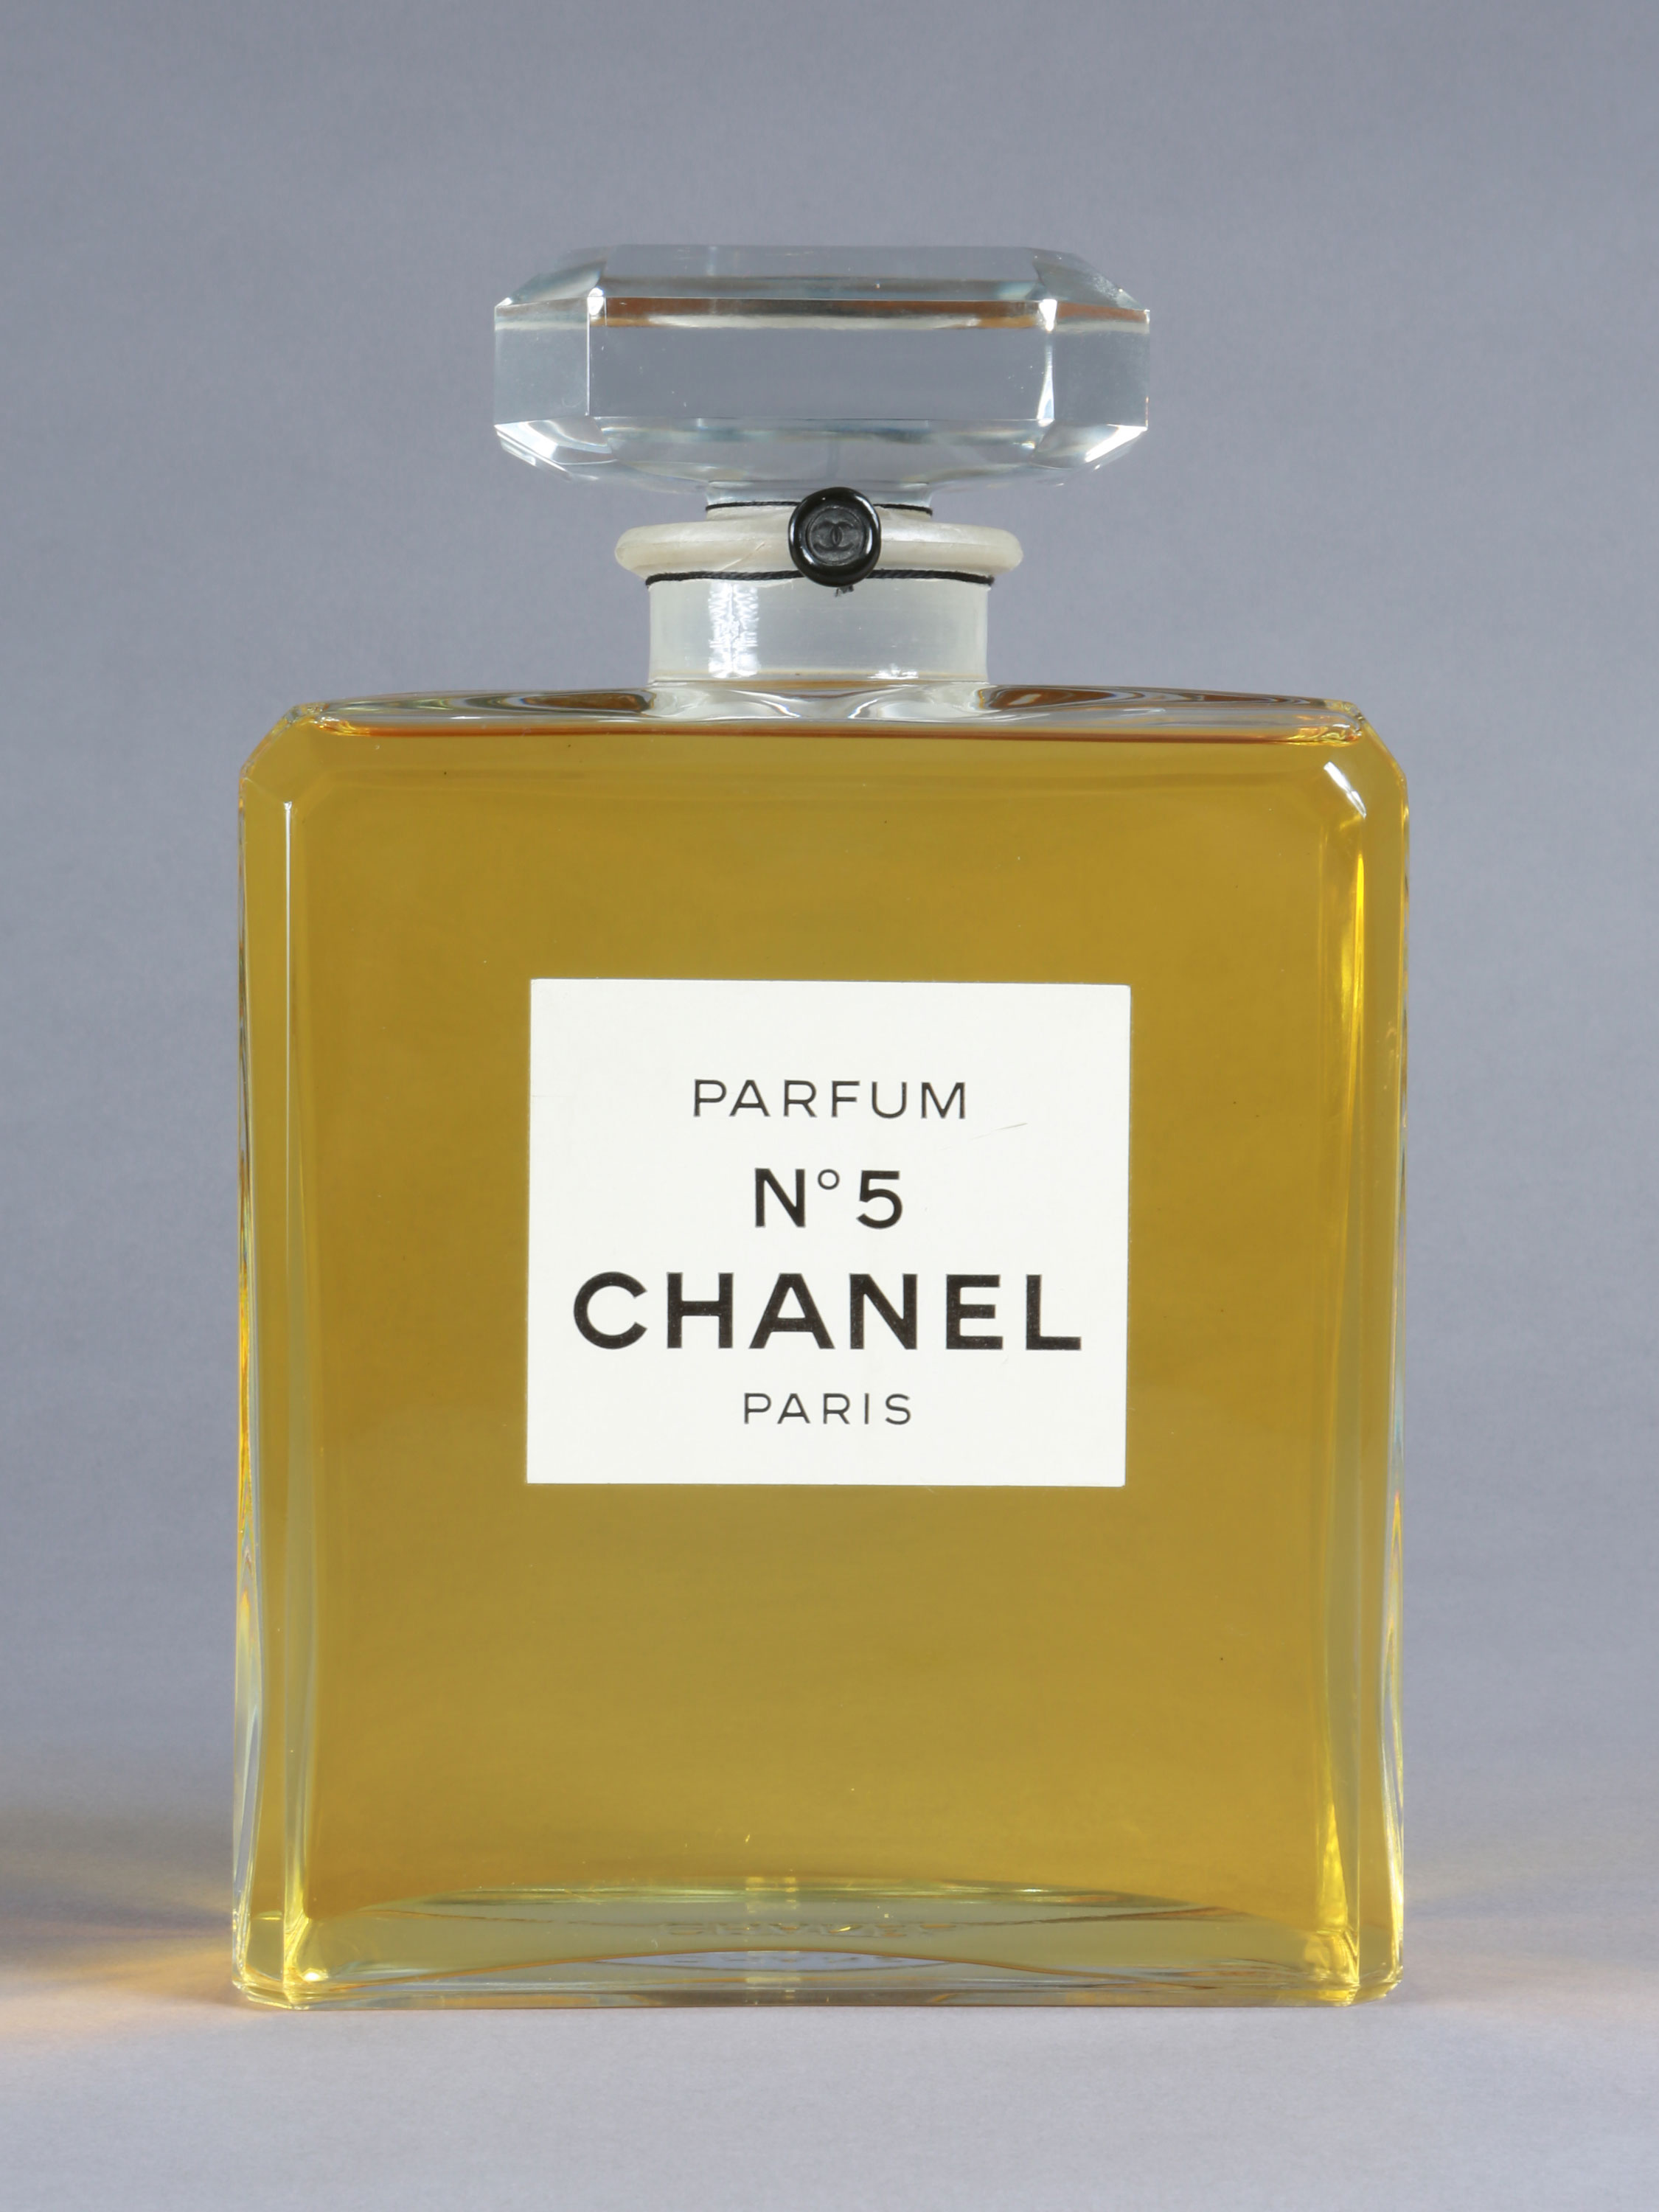 No 5 Chanel Factice Parfumflasche - Hammer Auktionen, Basel - Switzerland